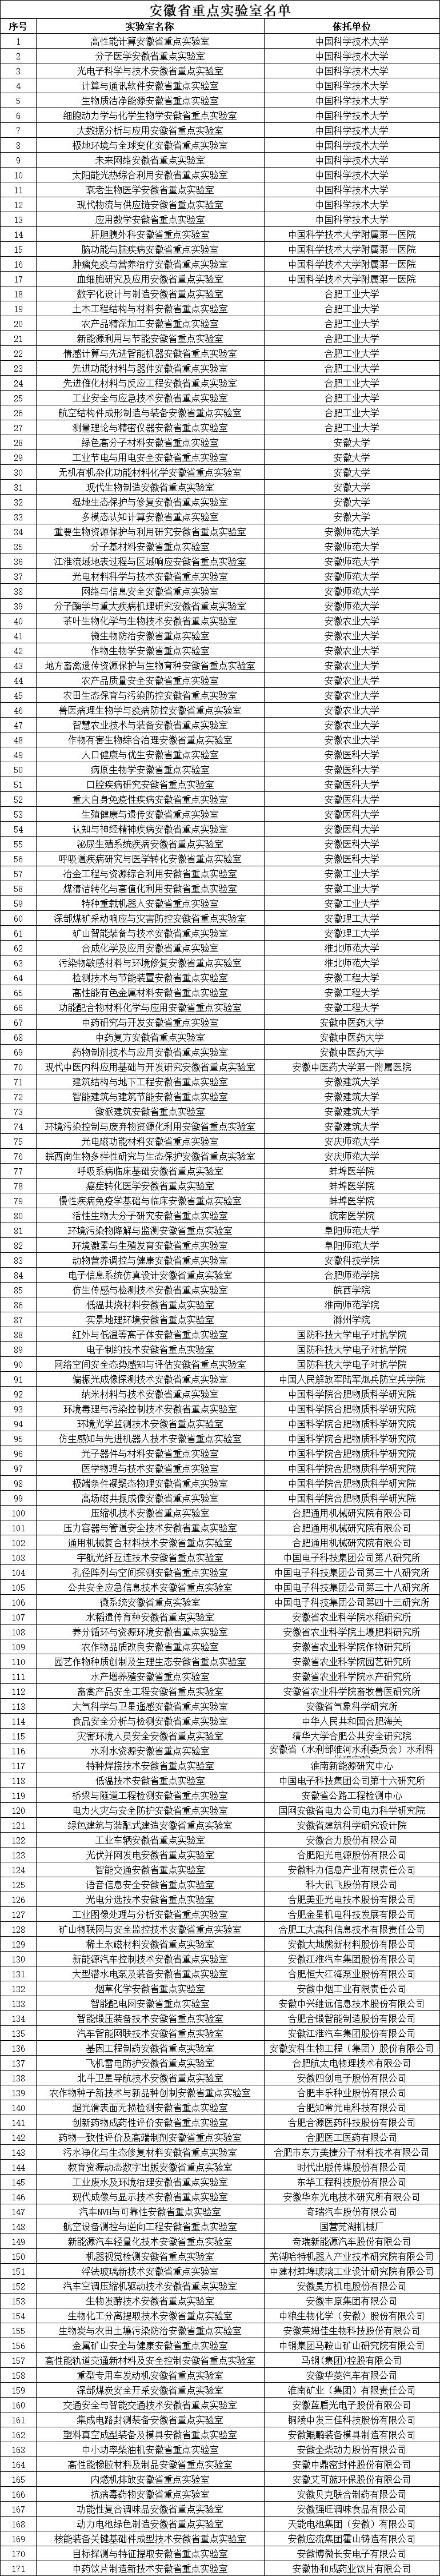 安徽省重点实验室名单